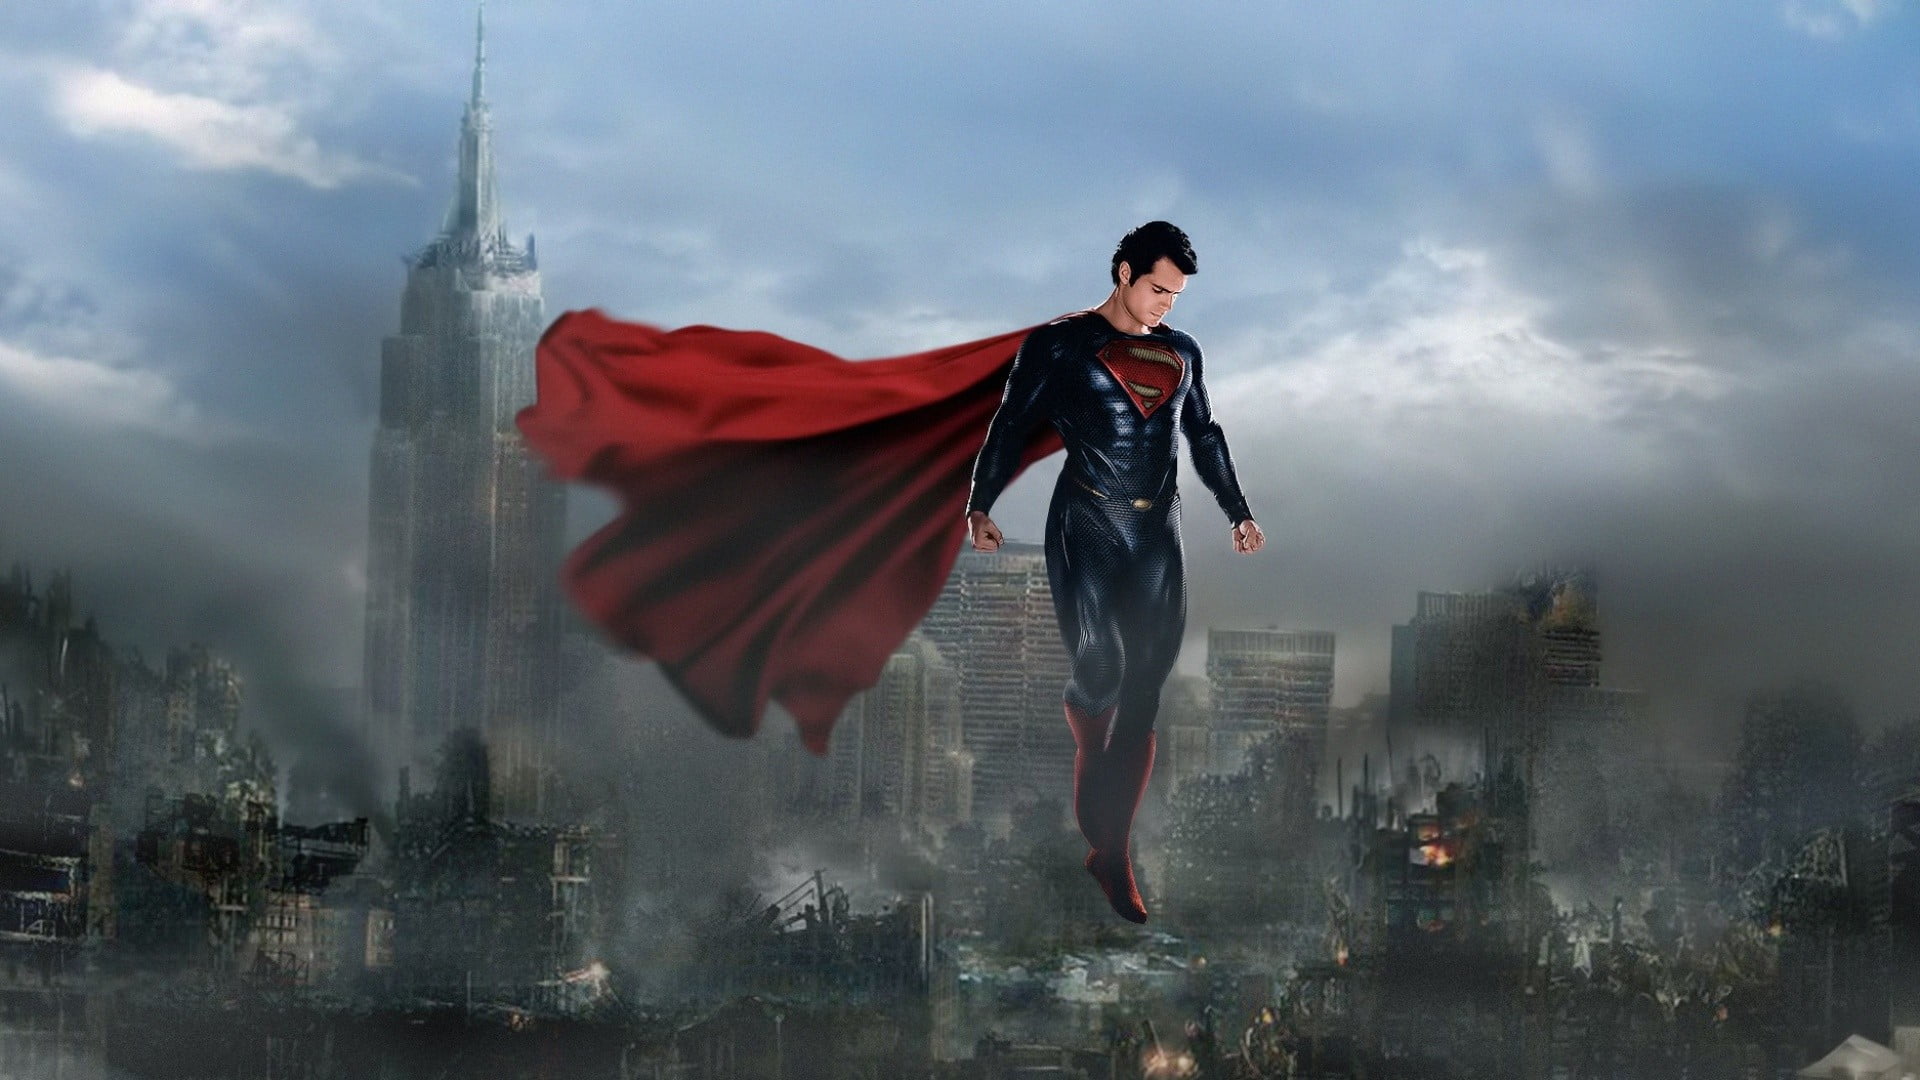 homme de papier peint en acier,superman,super héros,personnage fictif,ligue de justice,oeuvre de cg